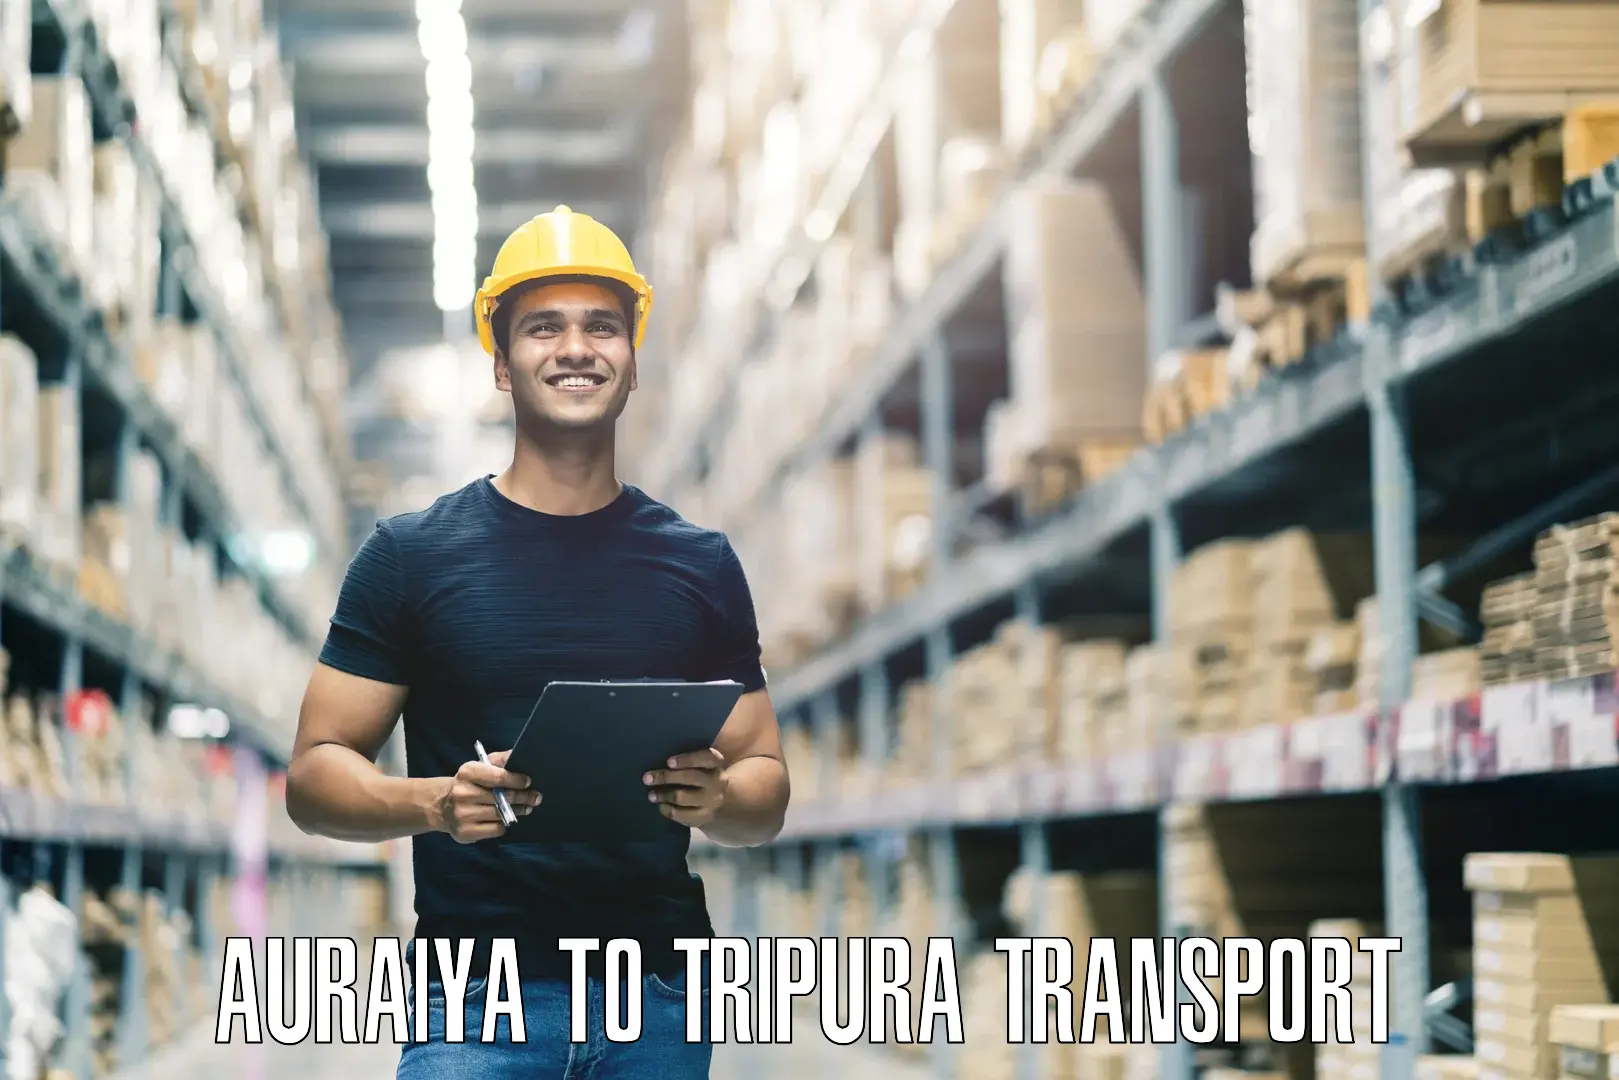 Furniture transport service Auraiya to Dhalai